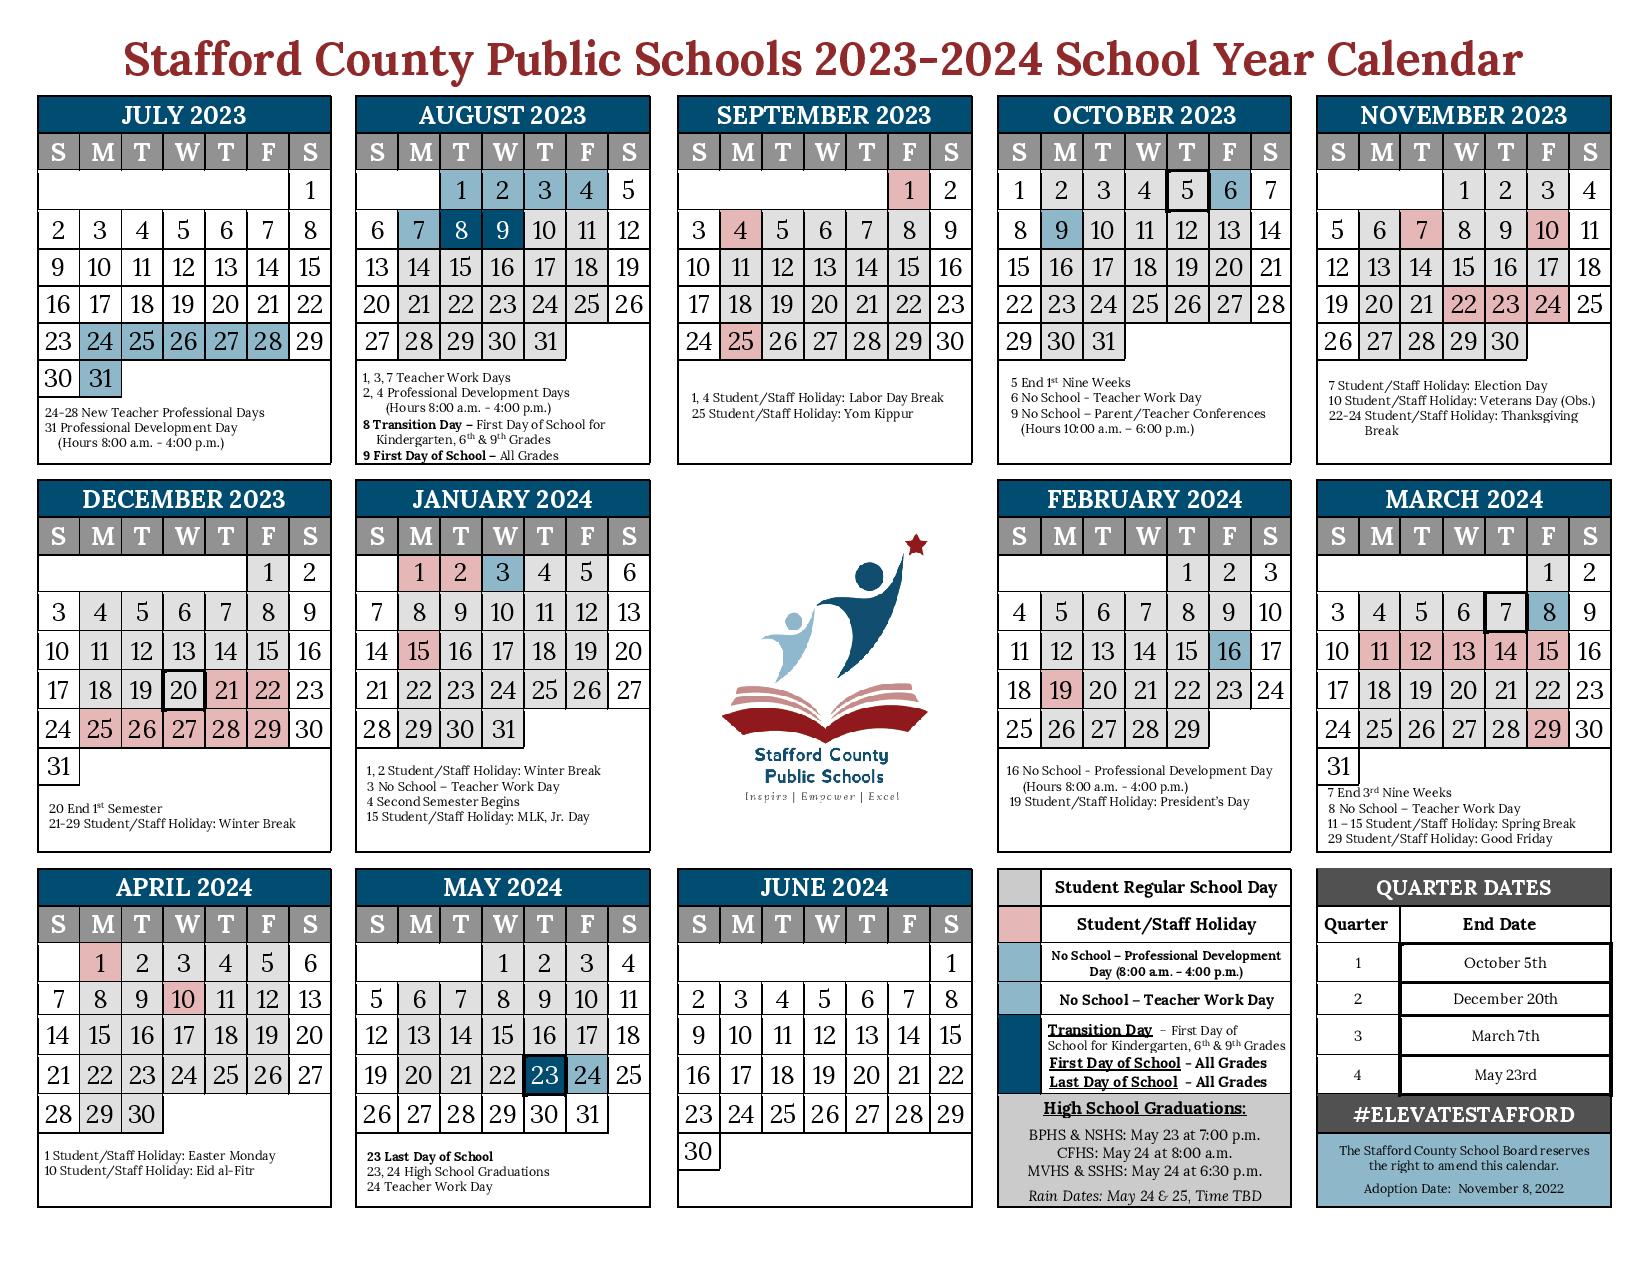 Stafford County Public Schools Calendar 2023 2024 in PDF